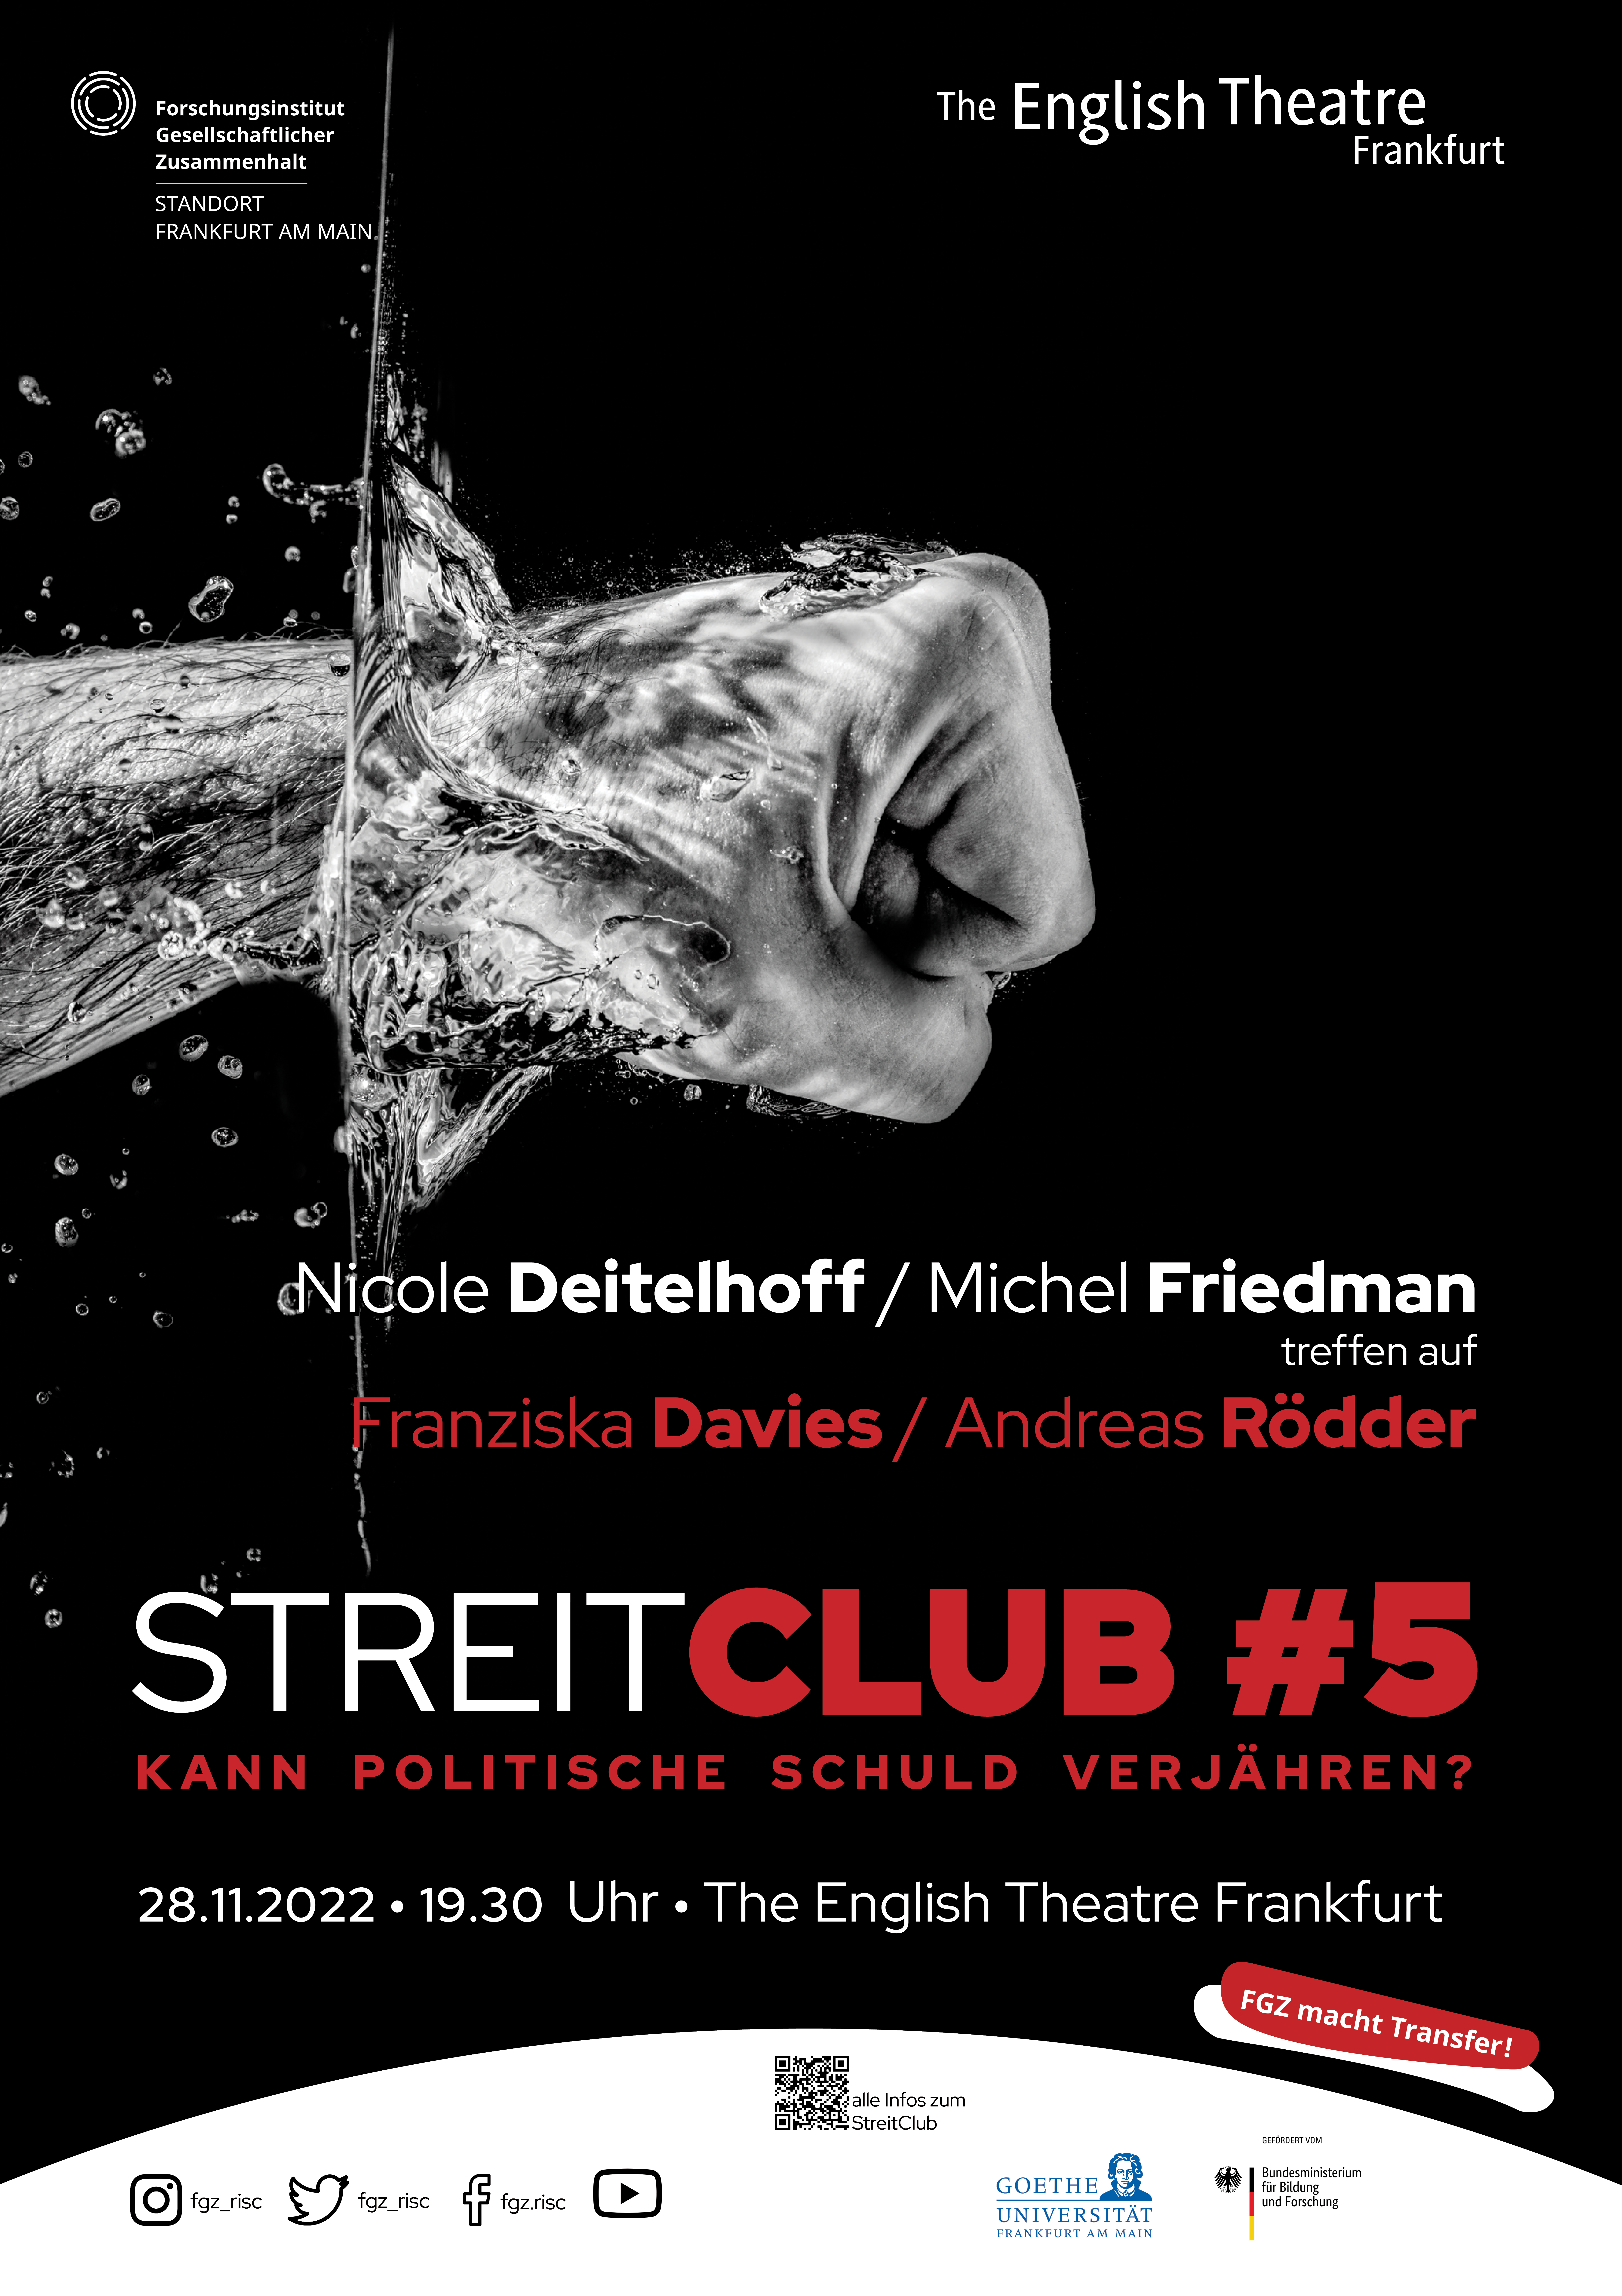 StreitClub #5 "Verjährt politische Schuld?"